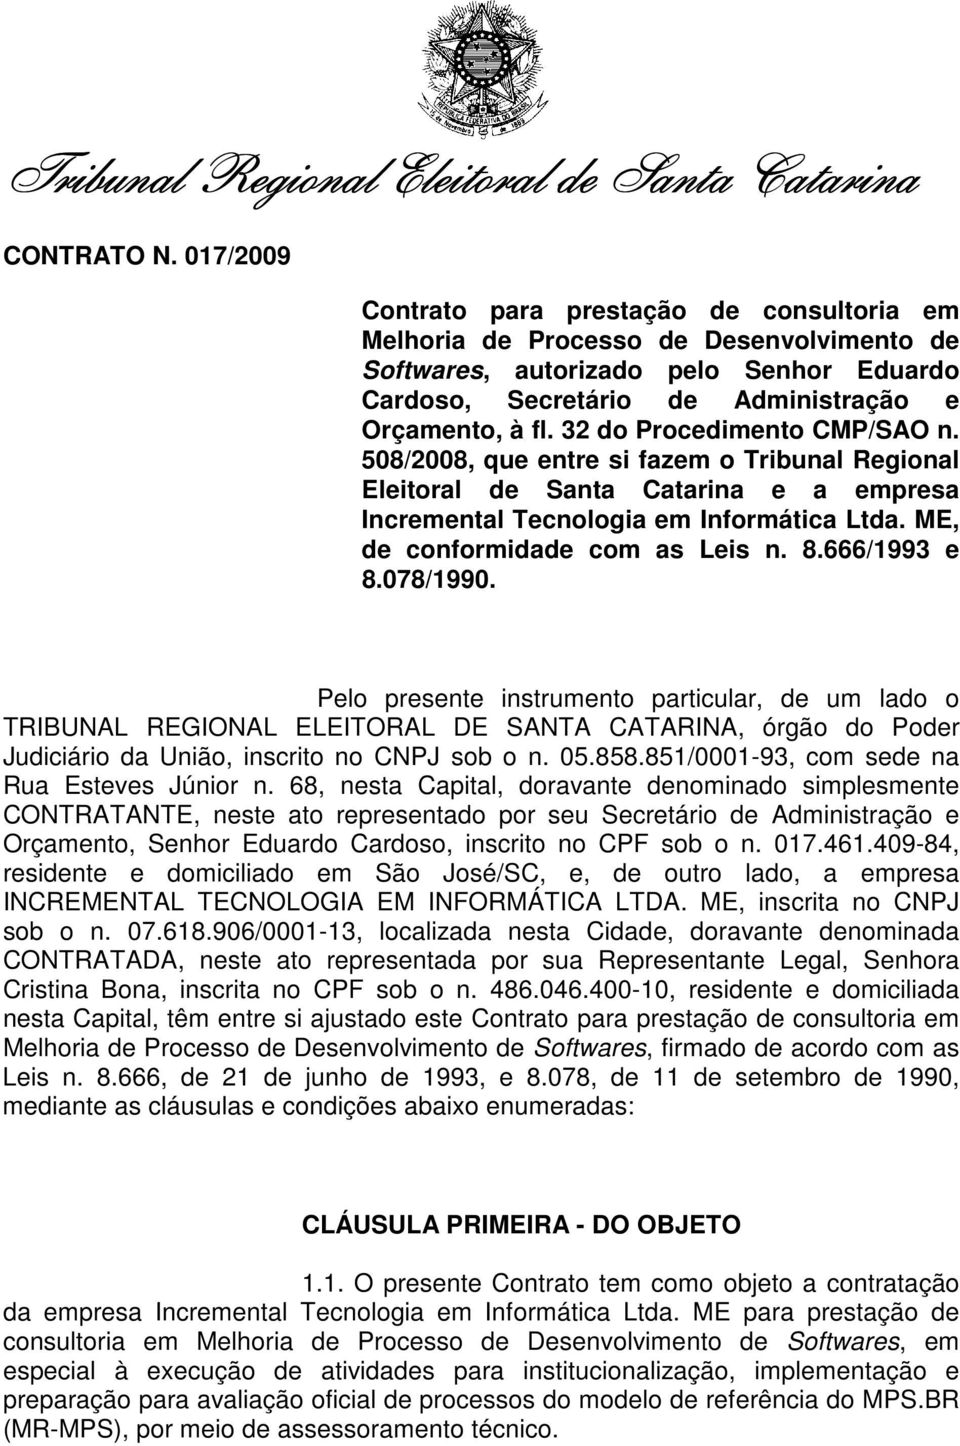 32 do Procedimento CMP/SAO n. 508/2008, que entre si fazem o Tribunal Regional Eleitoral de Santa Catarina e a empresa Incremental Tecnologia em Informática Ltda. ME, de conformidade com as Leis n. 8.